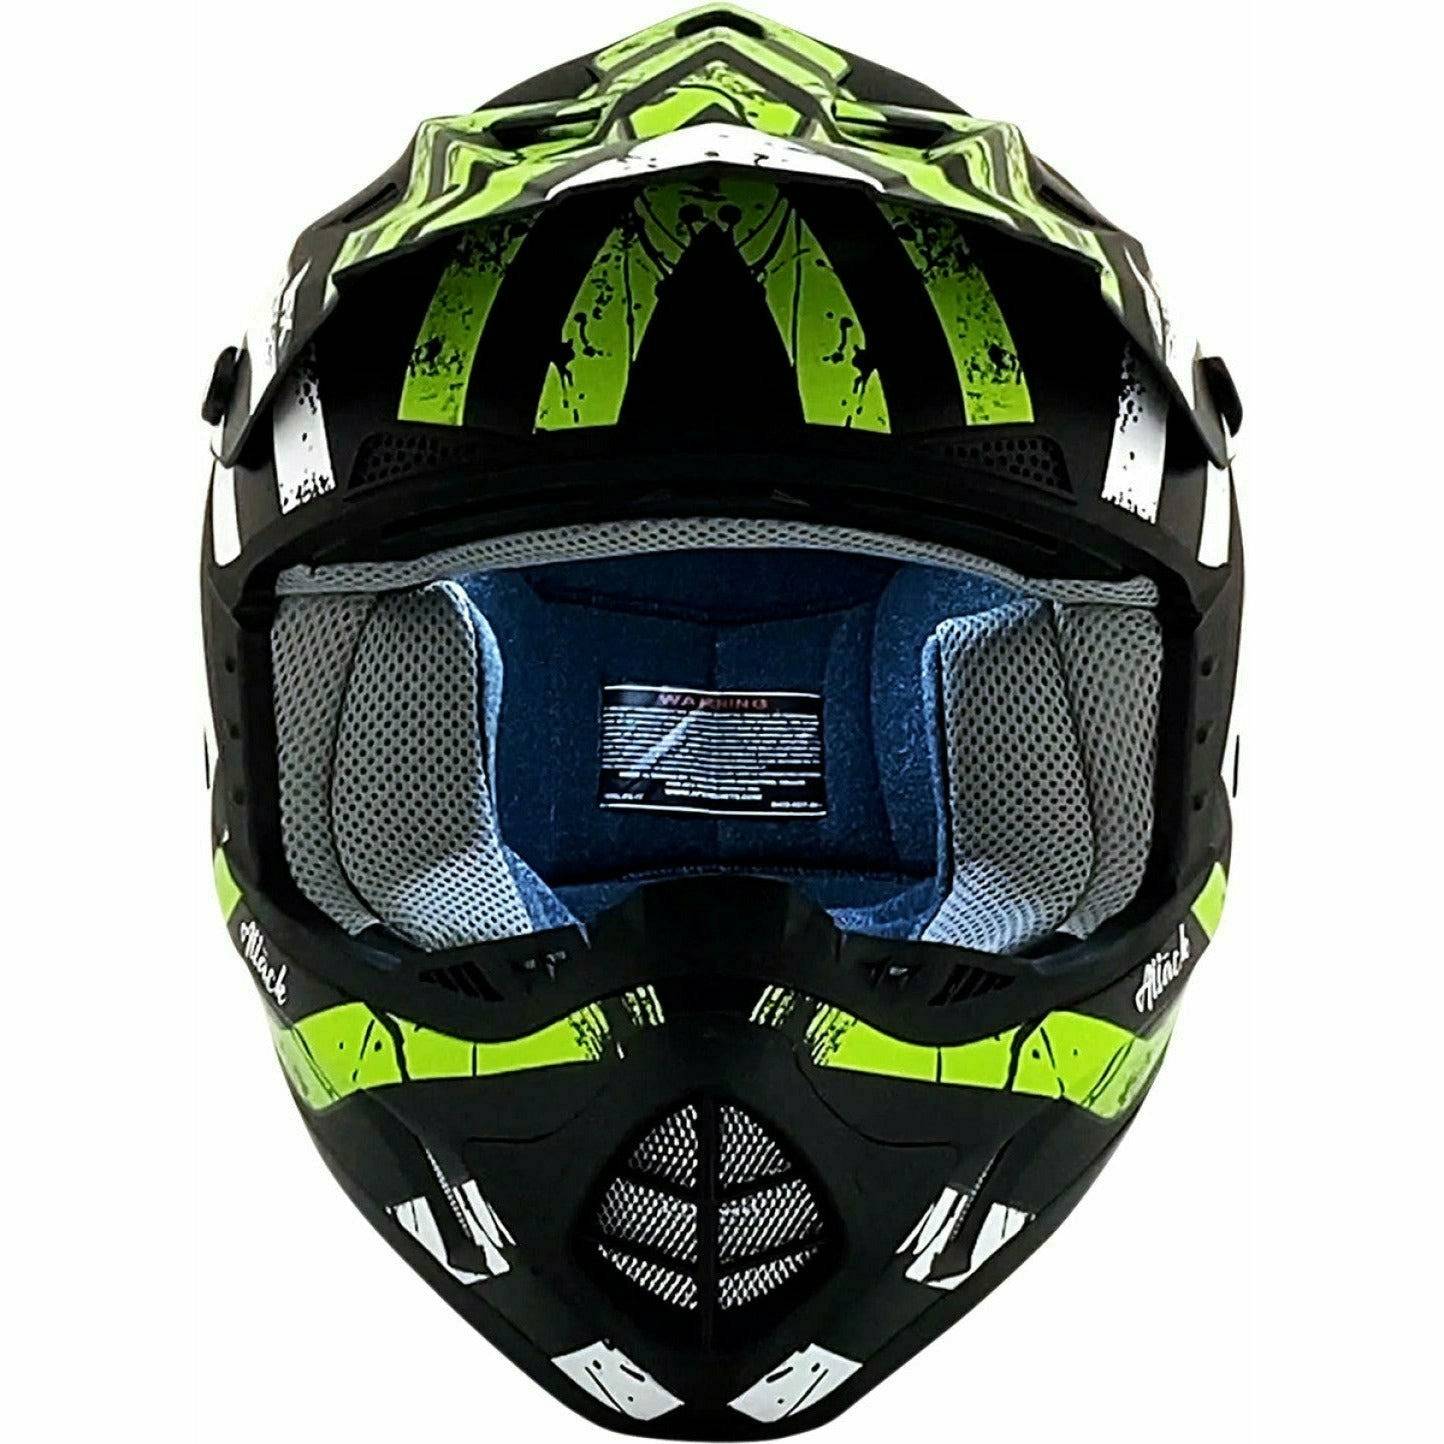 AFX FX-17 Youth Helmet (Attack)